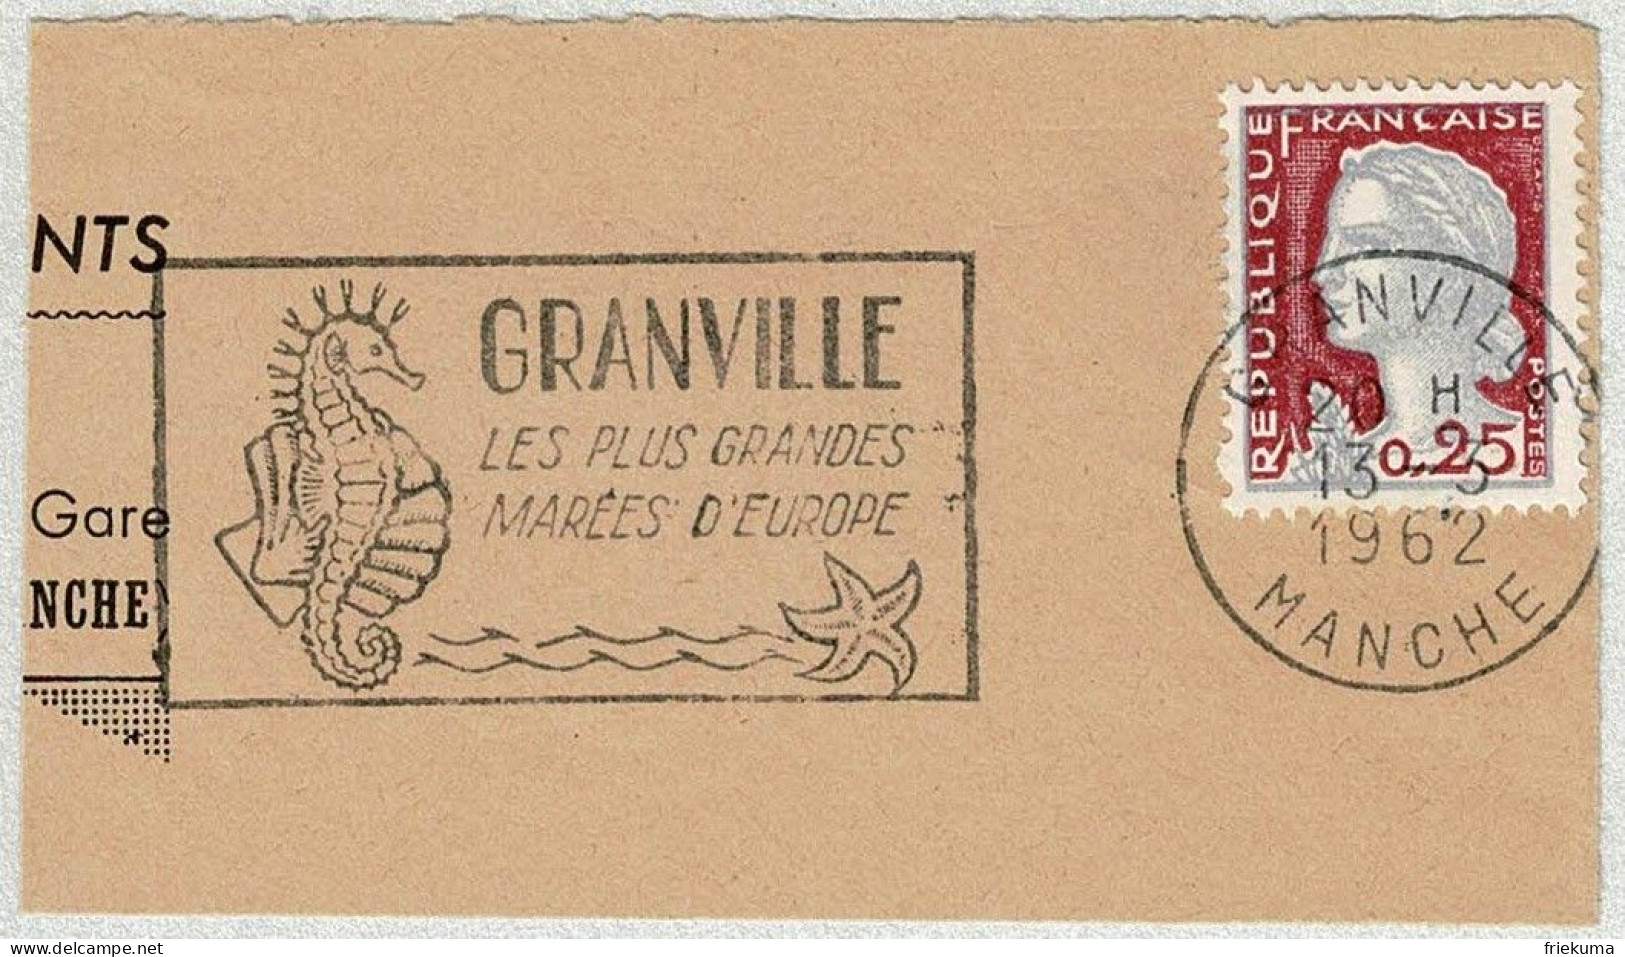 Frankreich / France 1962, Flaggenstempel Granville, Seepferdchen / Hippocampus, Seestern / Asteroidea, Gezeiten - Marine Life